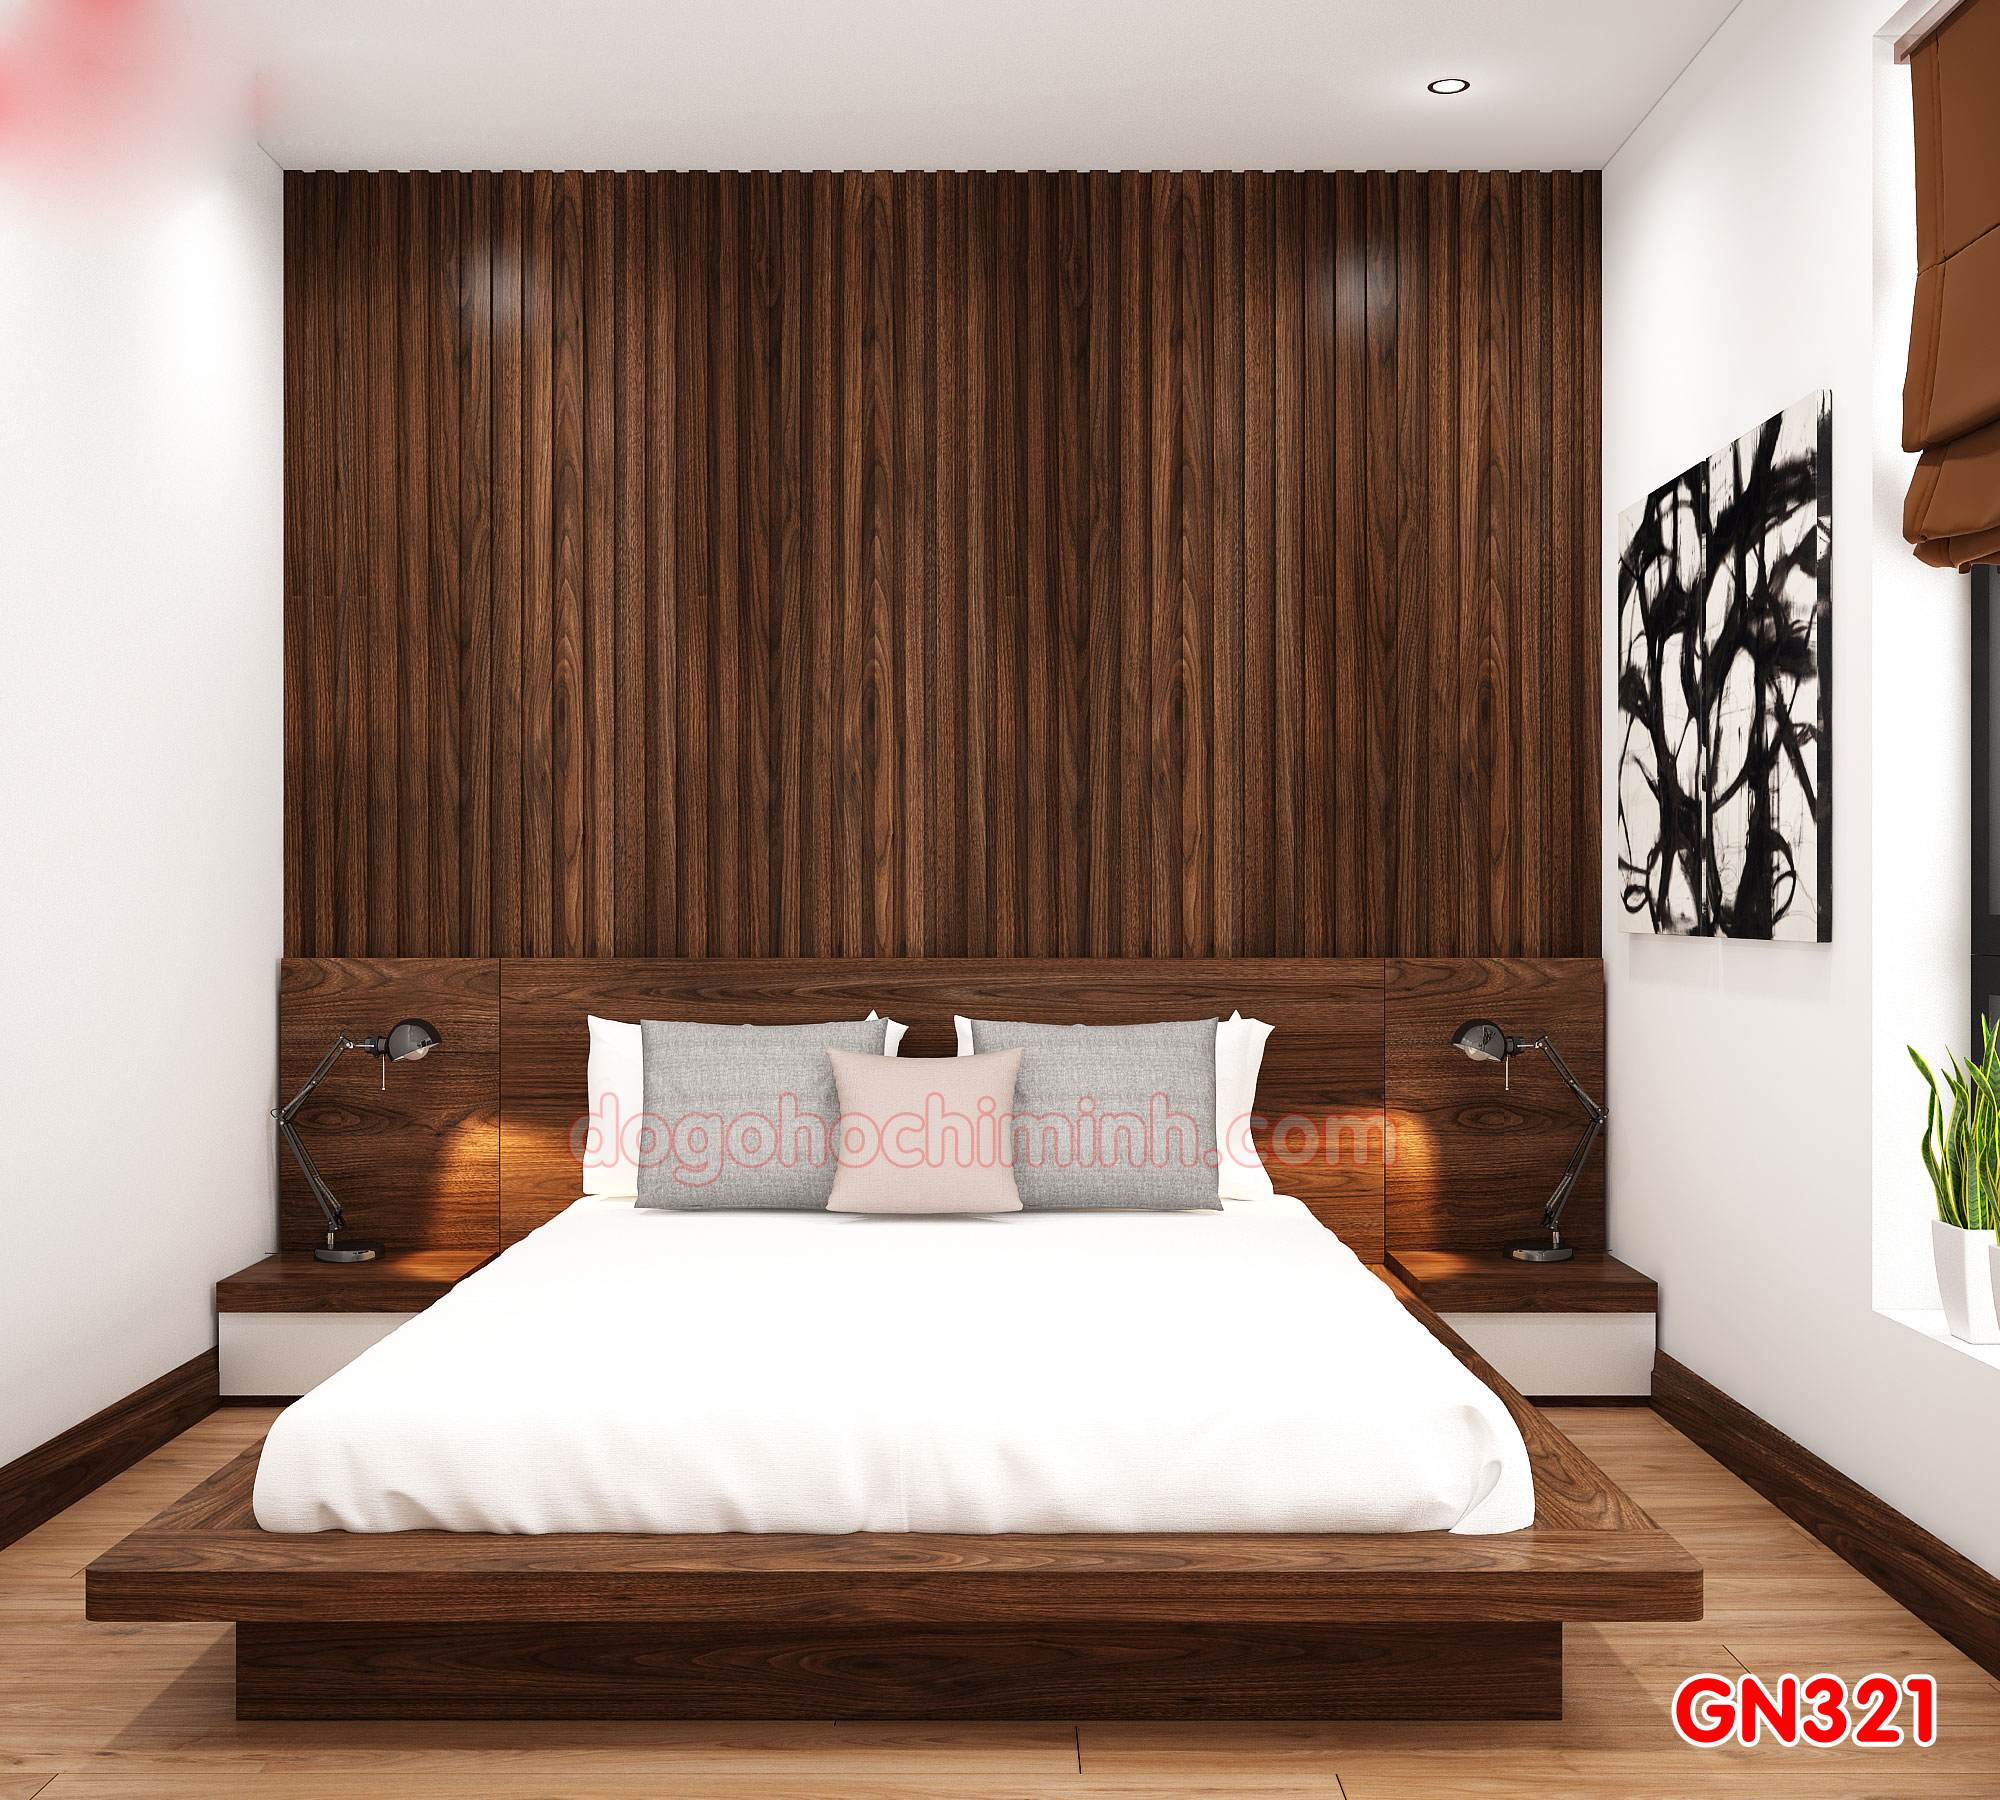 Giường ngủ gỗ đẹp cao cấp giá rẻ GN321